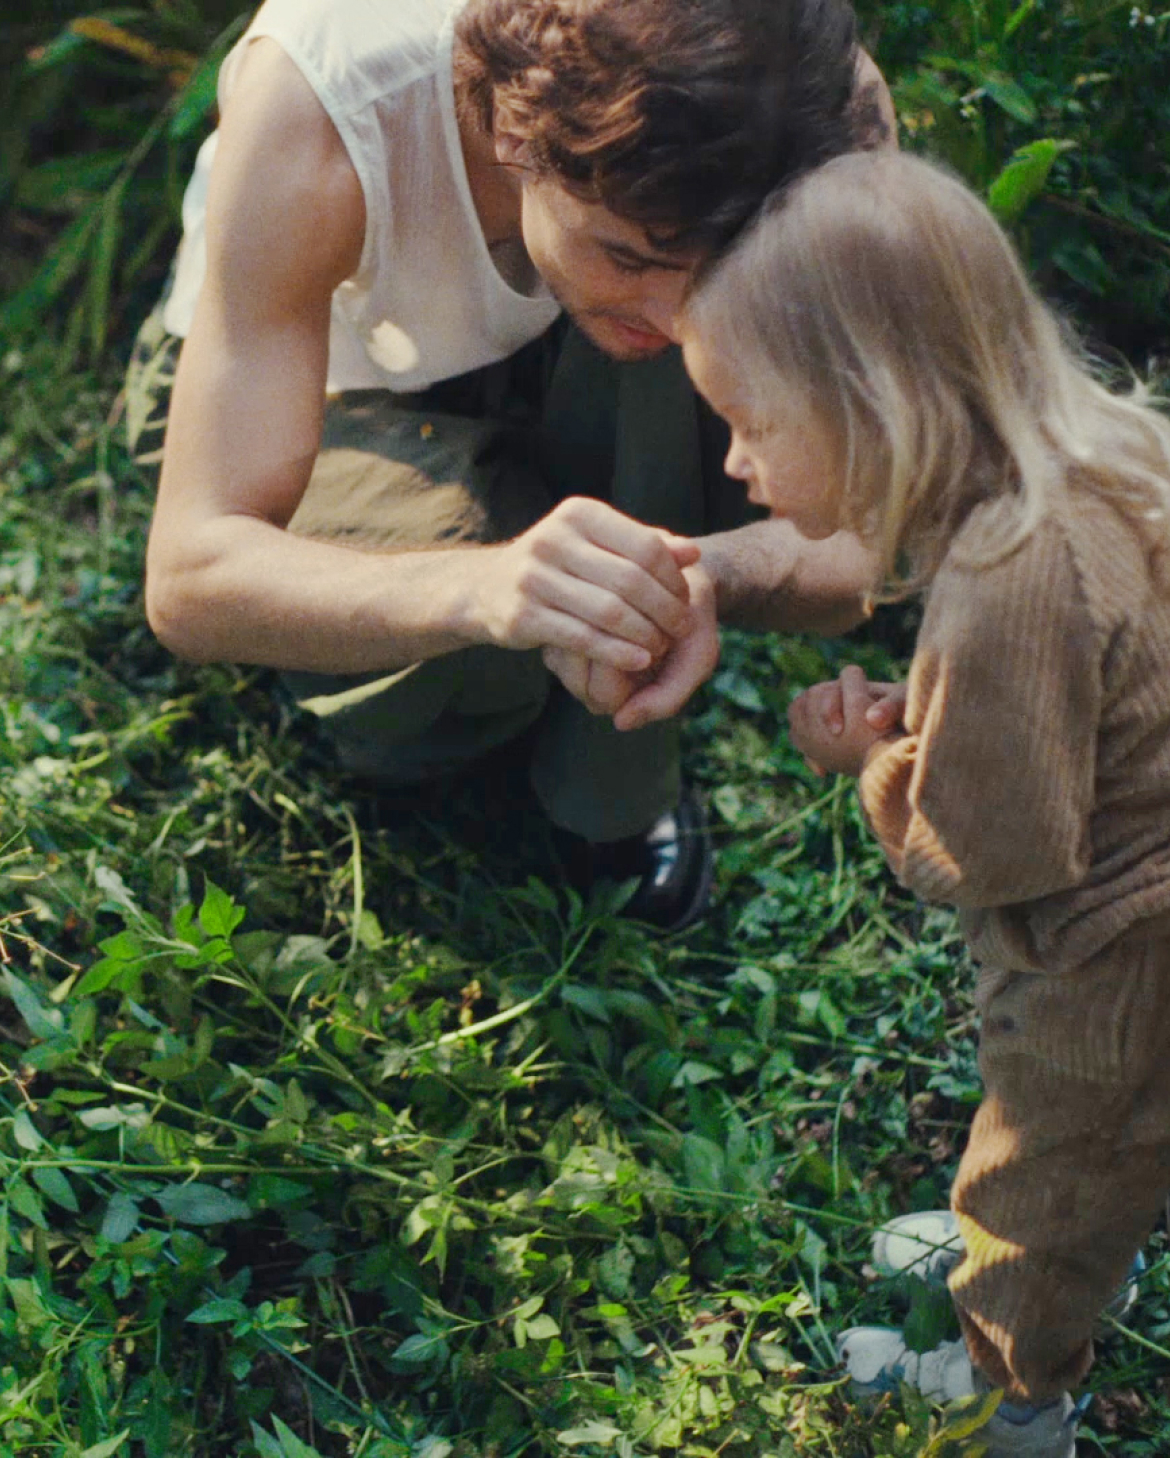 아빠와 딸이 풀이 무성하게 자란 정원에 웅크리고 앉아 있습니다. 아빠는 손에 잡은 무언가를 딸에게 보여주고 있습니다. 